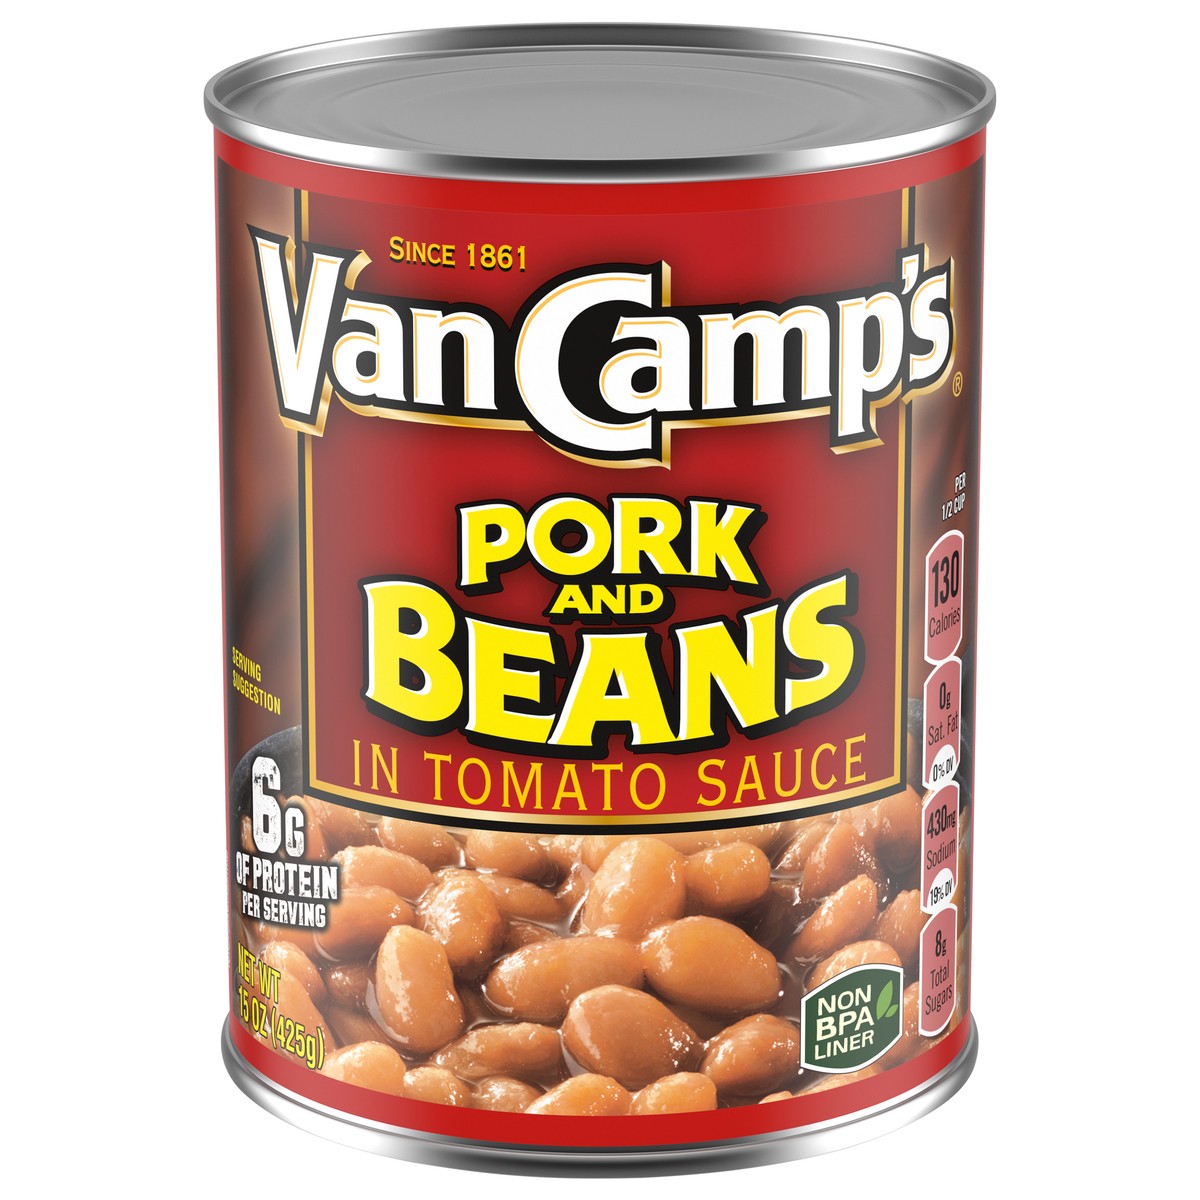 slide 1 of 3, Van Camp's in Tomato Sauce Pork and Beans in Tomato Sauce 15 oz, 15 oz